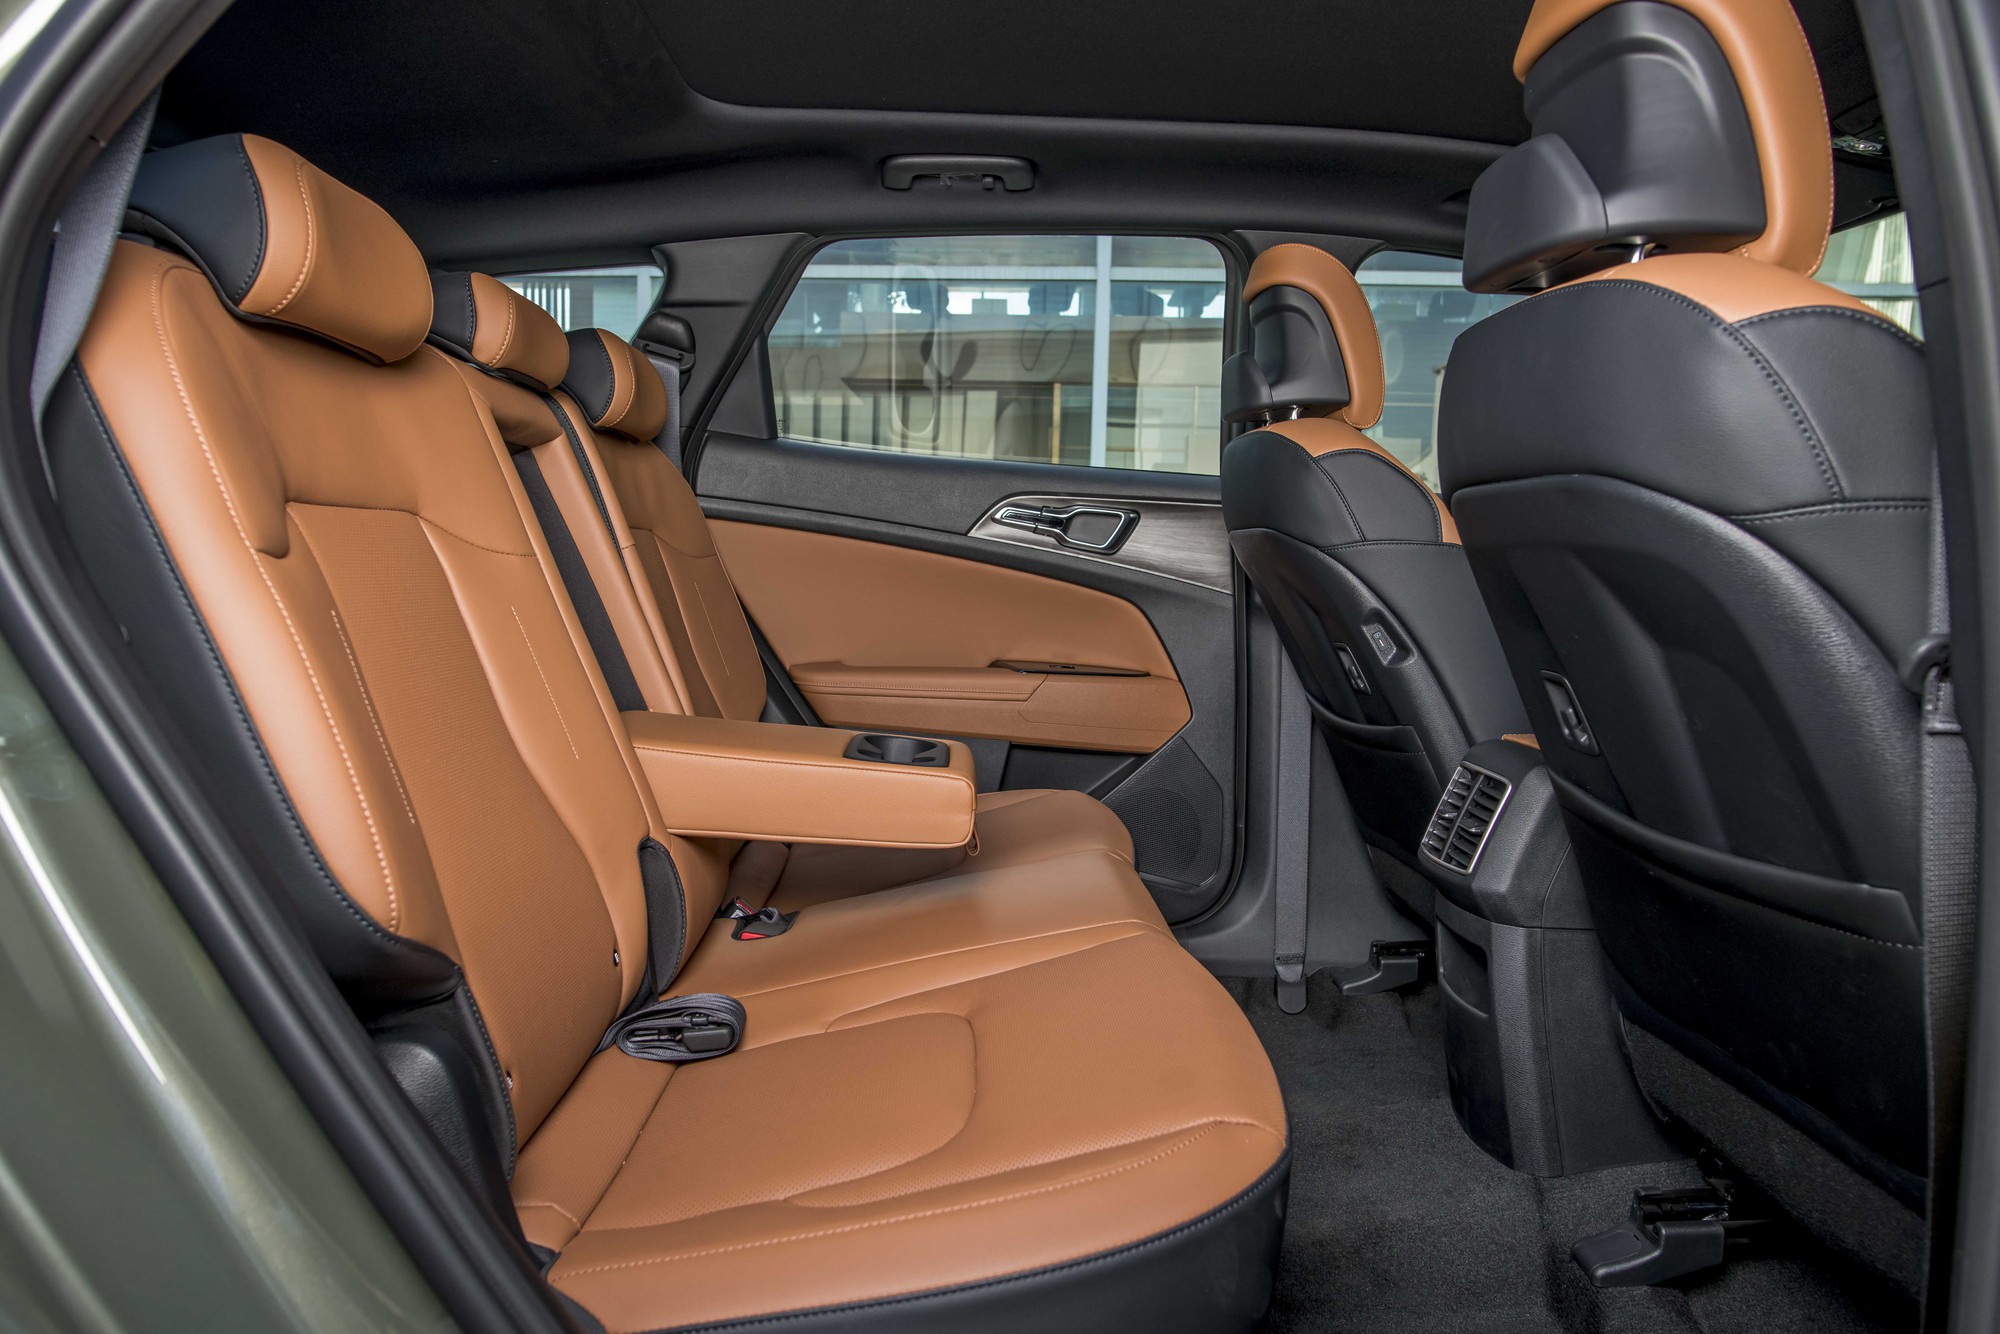 Kia Sportage giá từ 779 triệu đồng, nổi bật trong phân khúc SUV hạng C - Ảnh 3.